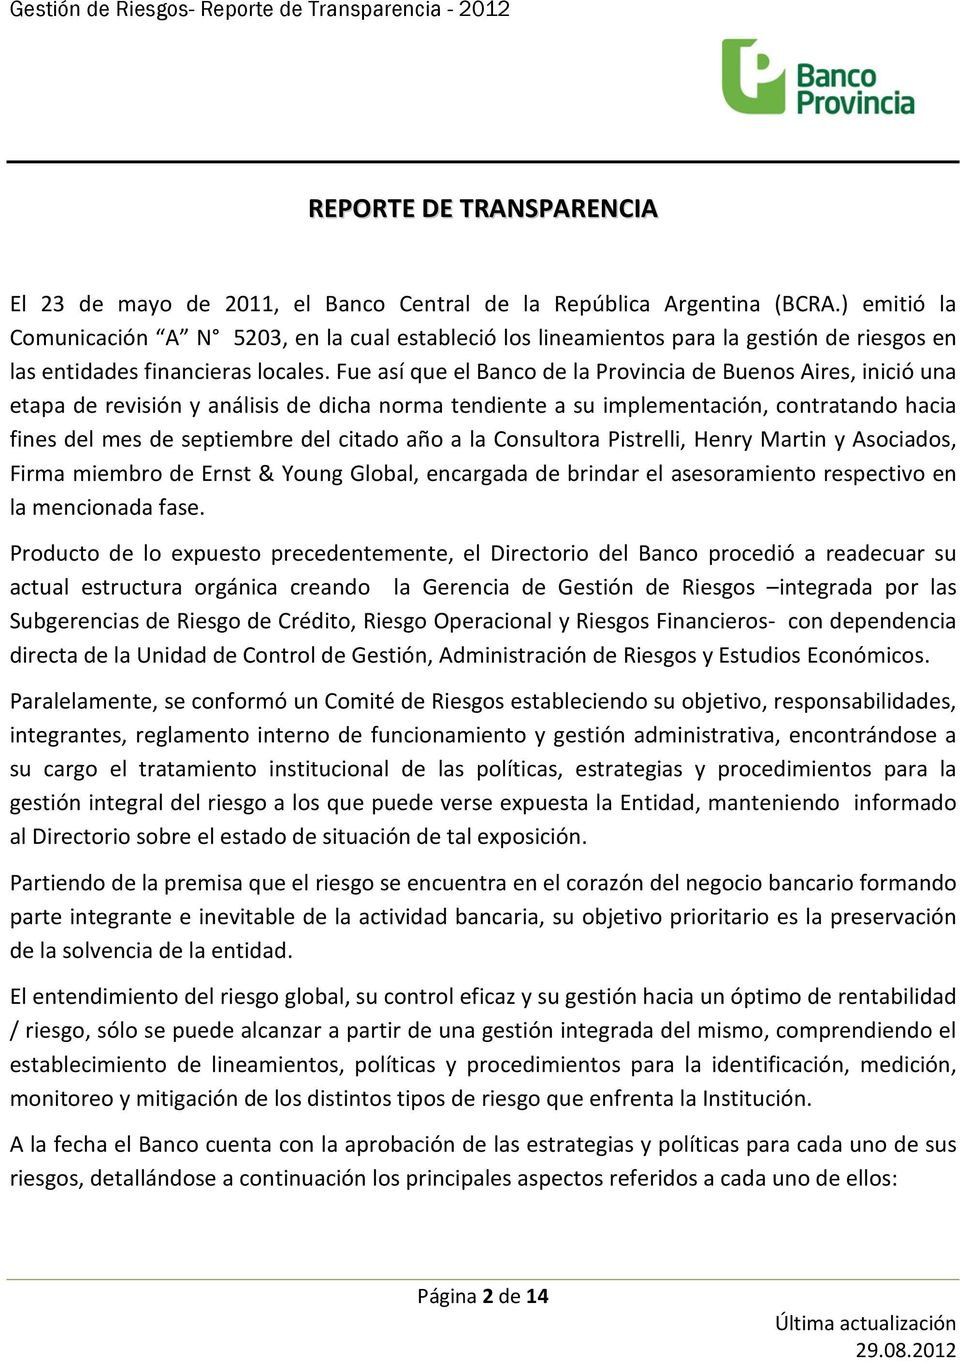 Fue así que el Banco de la Provincia de Buenos Aires, inició una etapa de revisión y análisis de dicha norma tendiente a su implementación, contratando hacia fines del mes de septiembre del citado